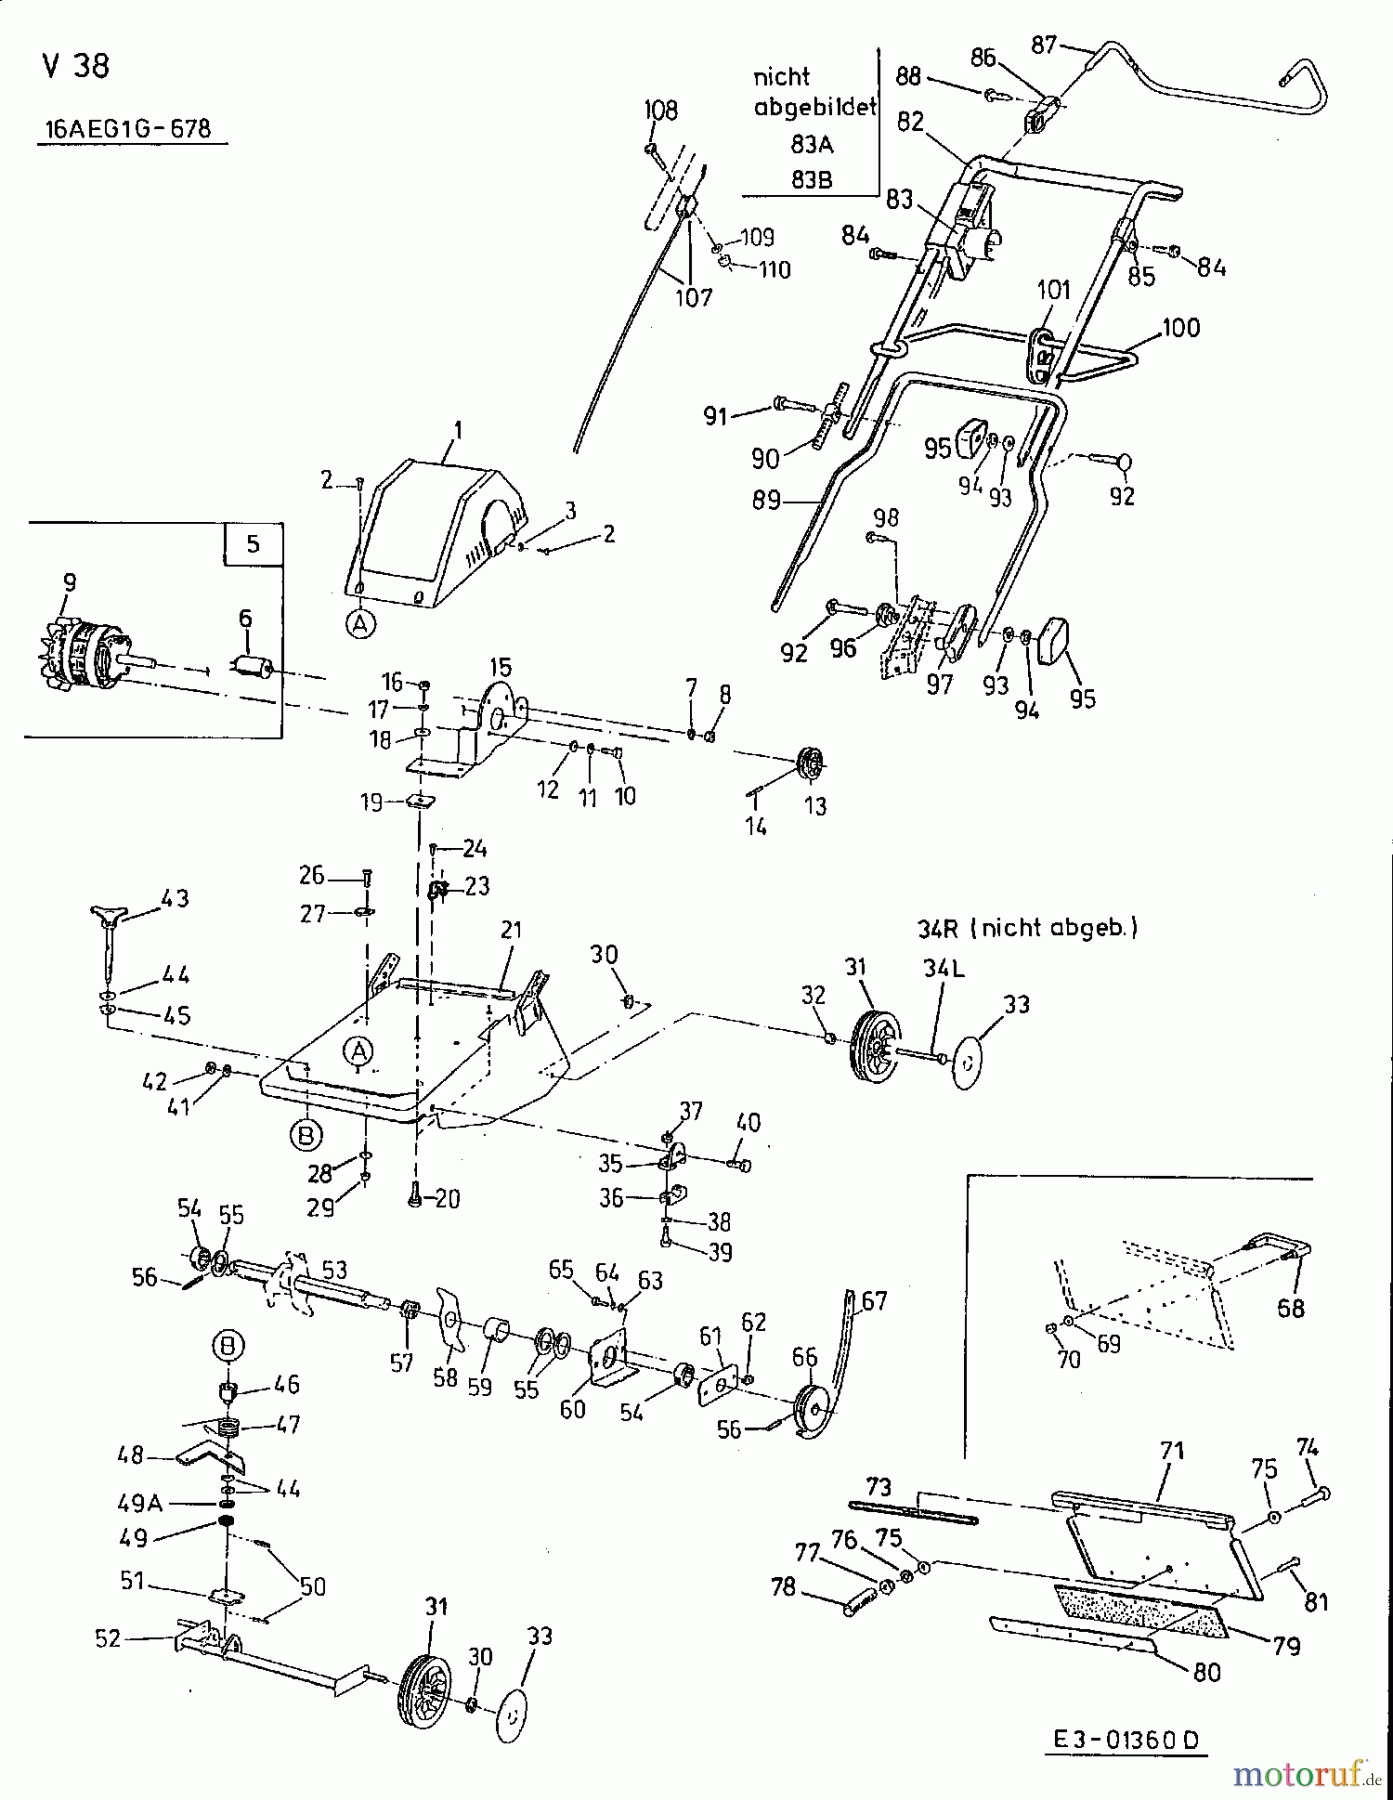  MTD Elektrovertikutierer V 38 16AEG1G-678  (2002) Grundgerät